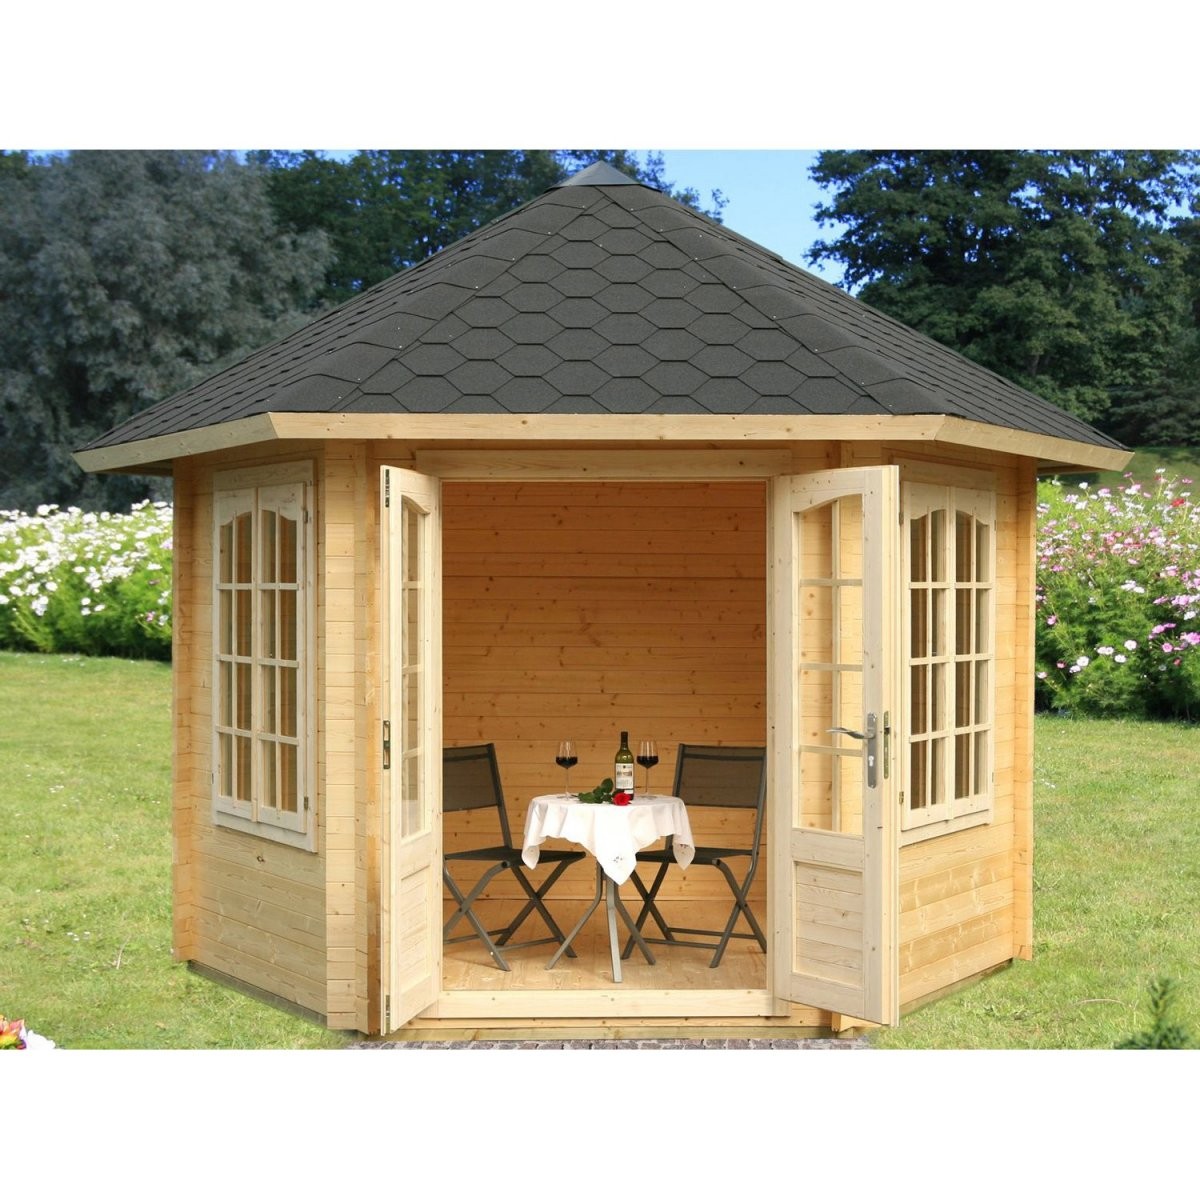 Gartenlauben  Holzpavillons Online Kaufen Bei Obi  Obi von Holz Pavillon Bausatz Günstig Photo